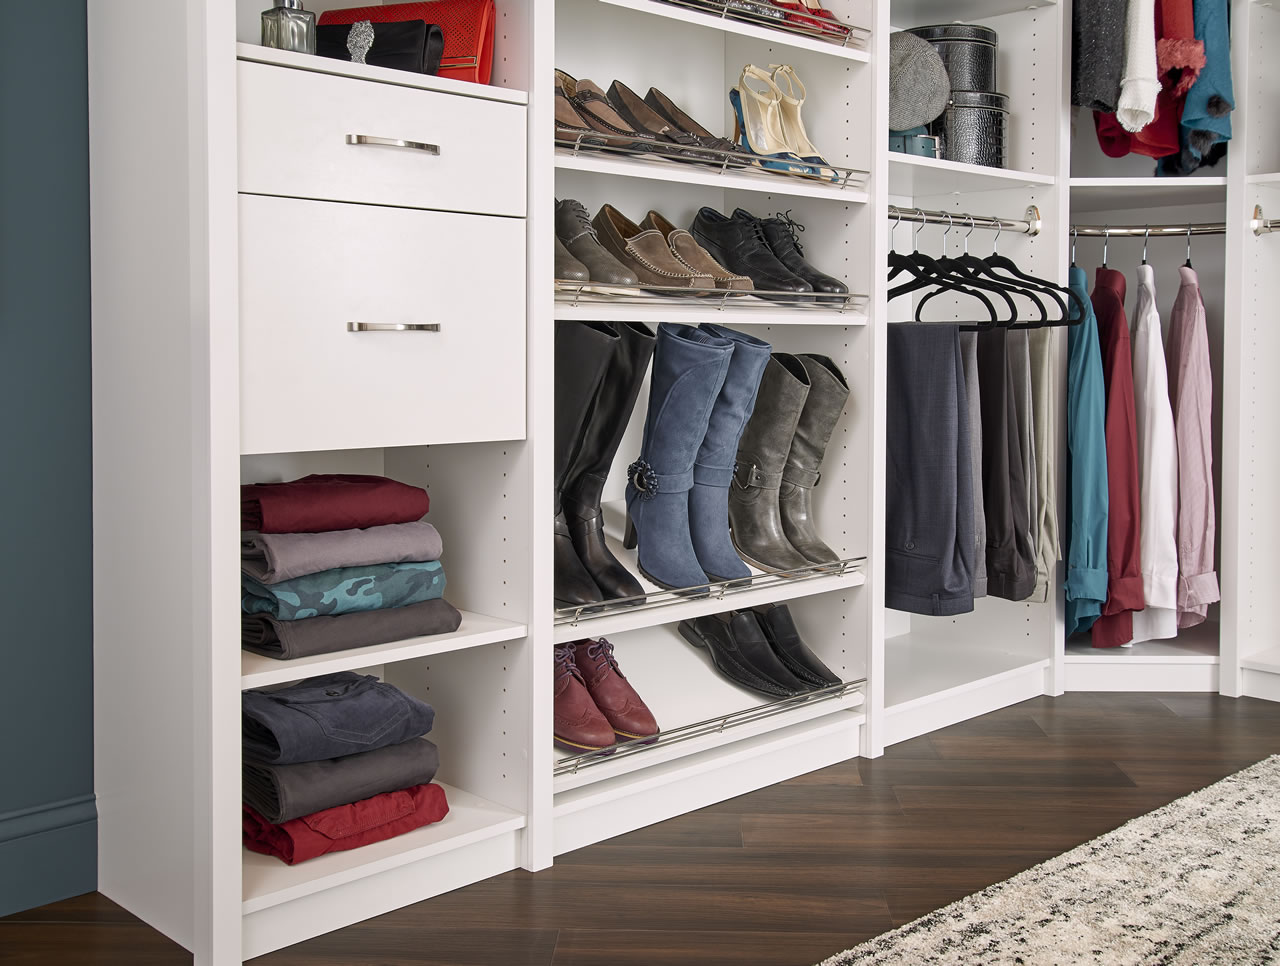 DIY an Organized Closet